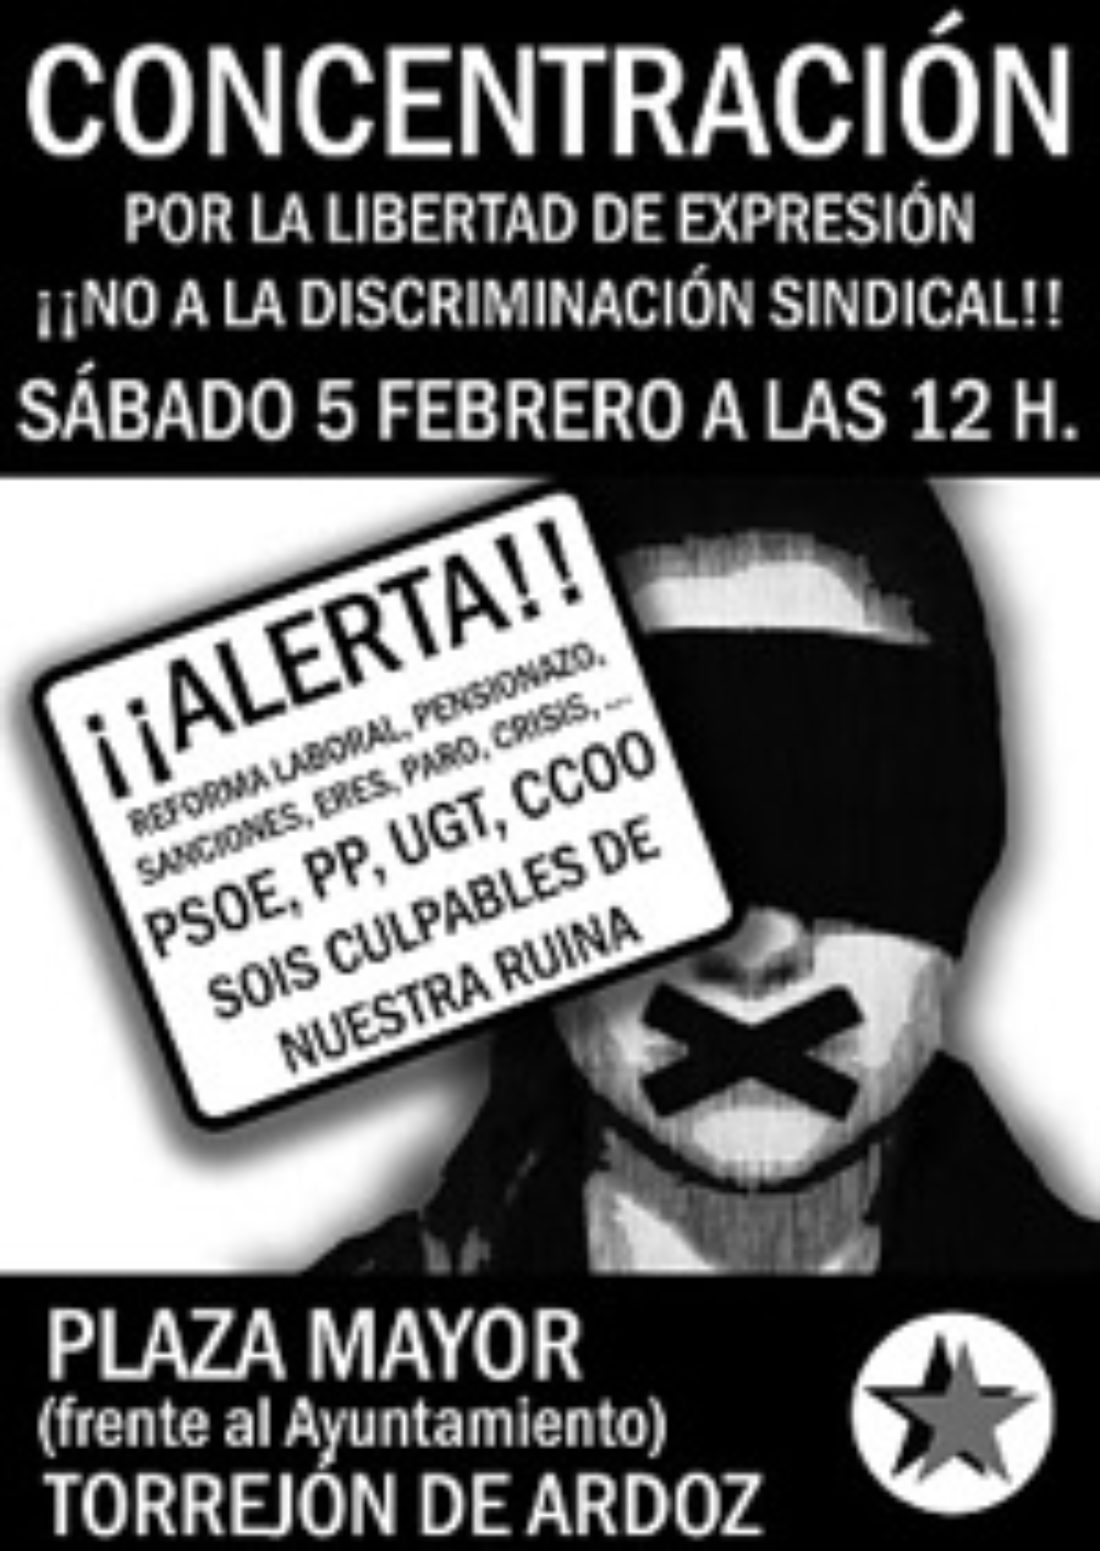 5 febrero, Torrejón de Ardoz : Concentración a favor de la libertad de expresión